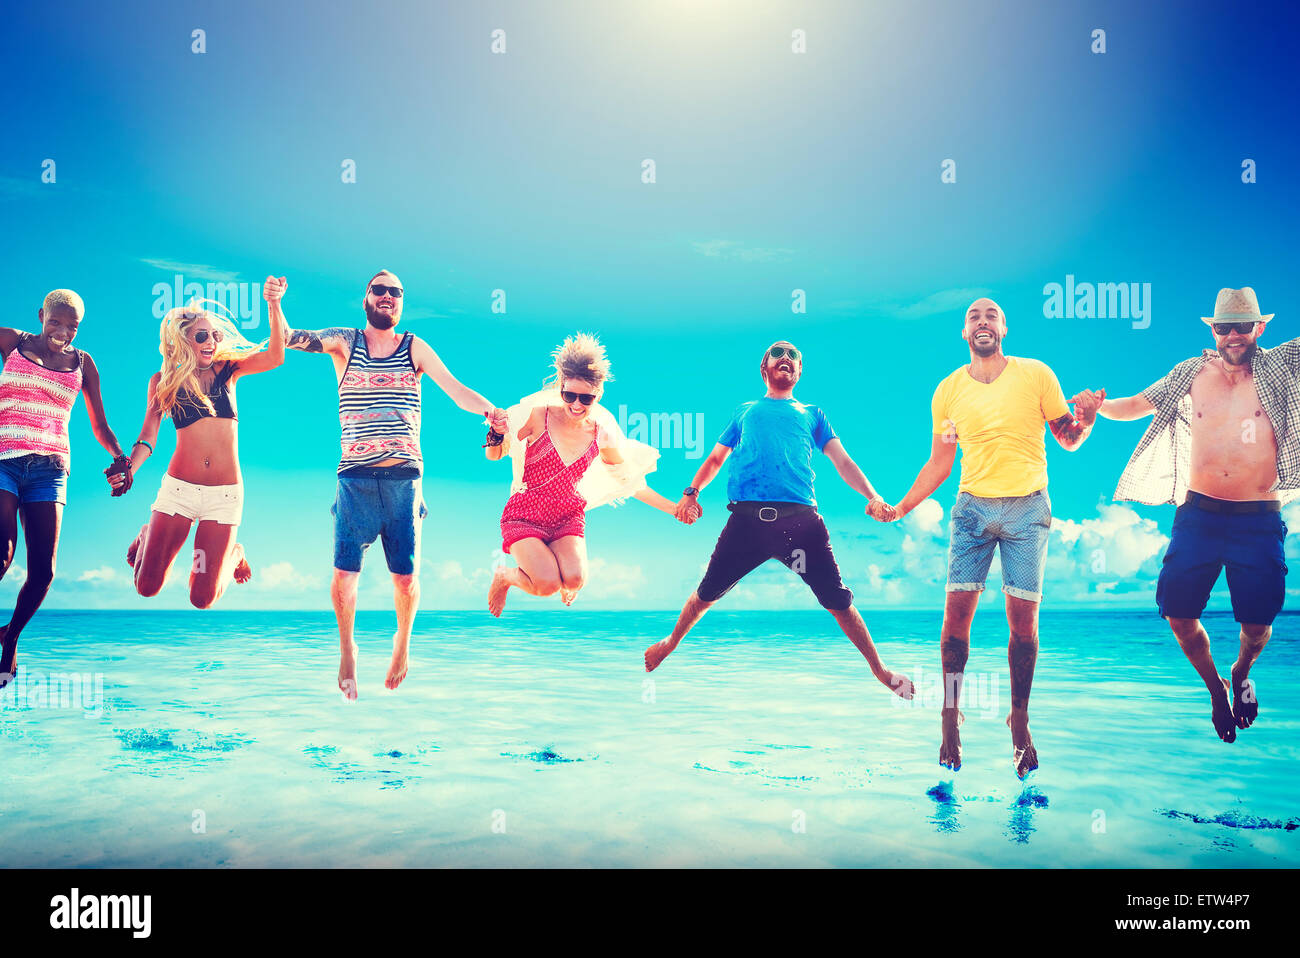 Diverse Beach Summer Friends Fun Jump Shot Concept Stock Photo